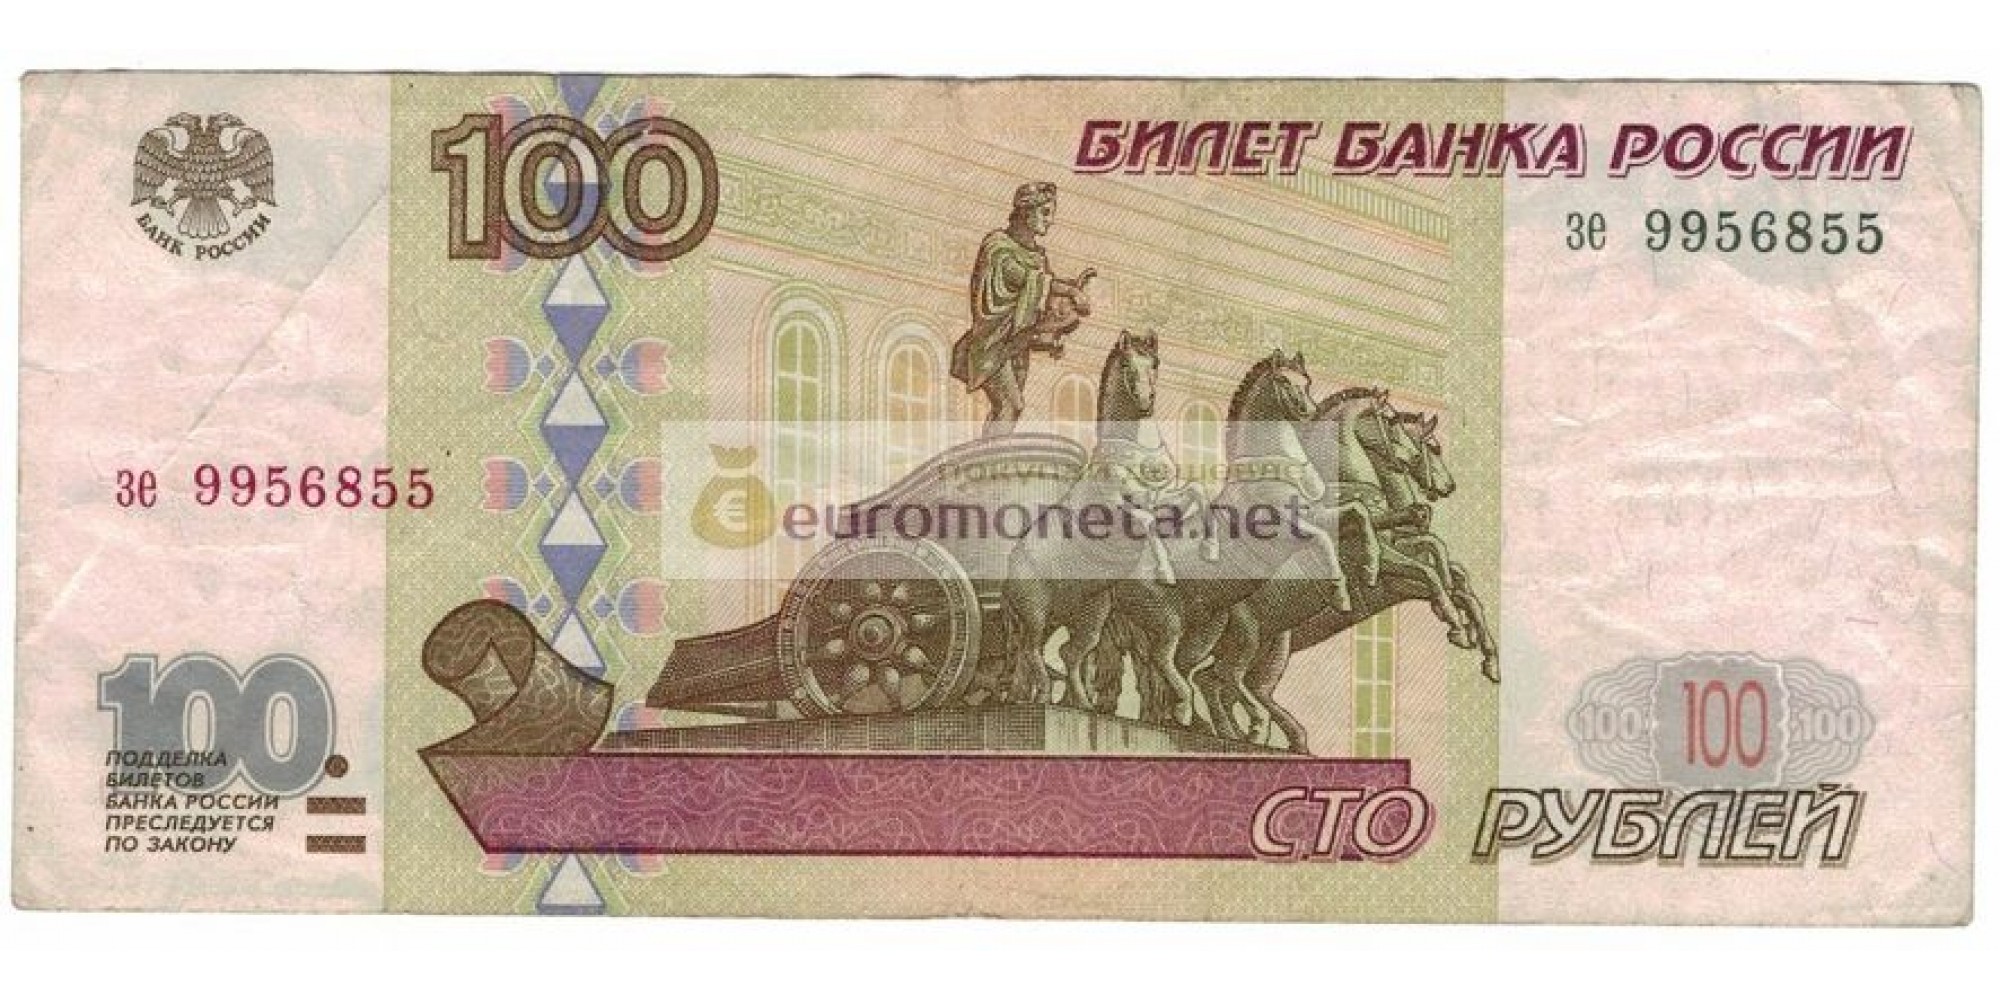 Россия 100 рублей 1997 год без модификации серия зе 9956855